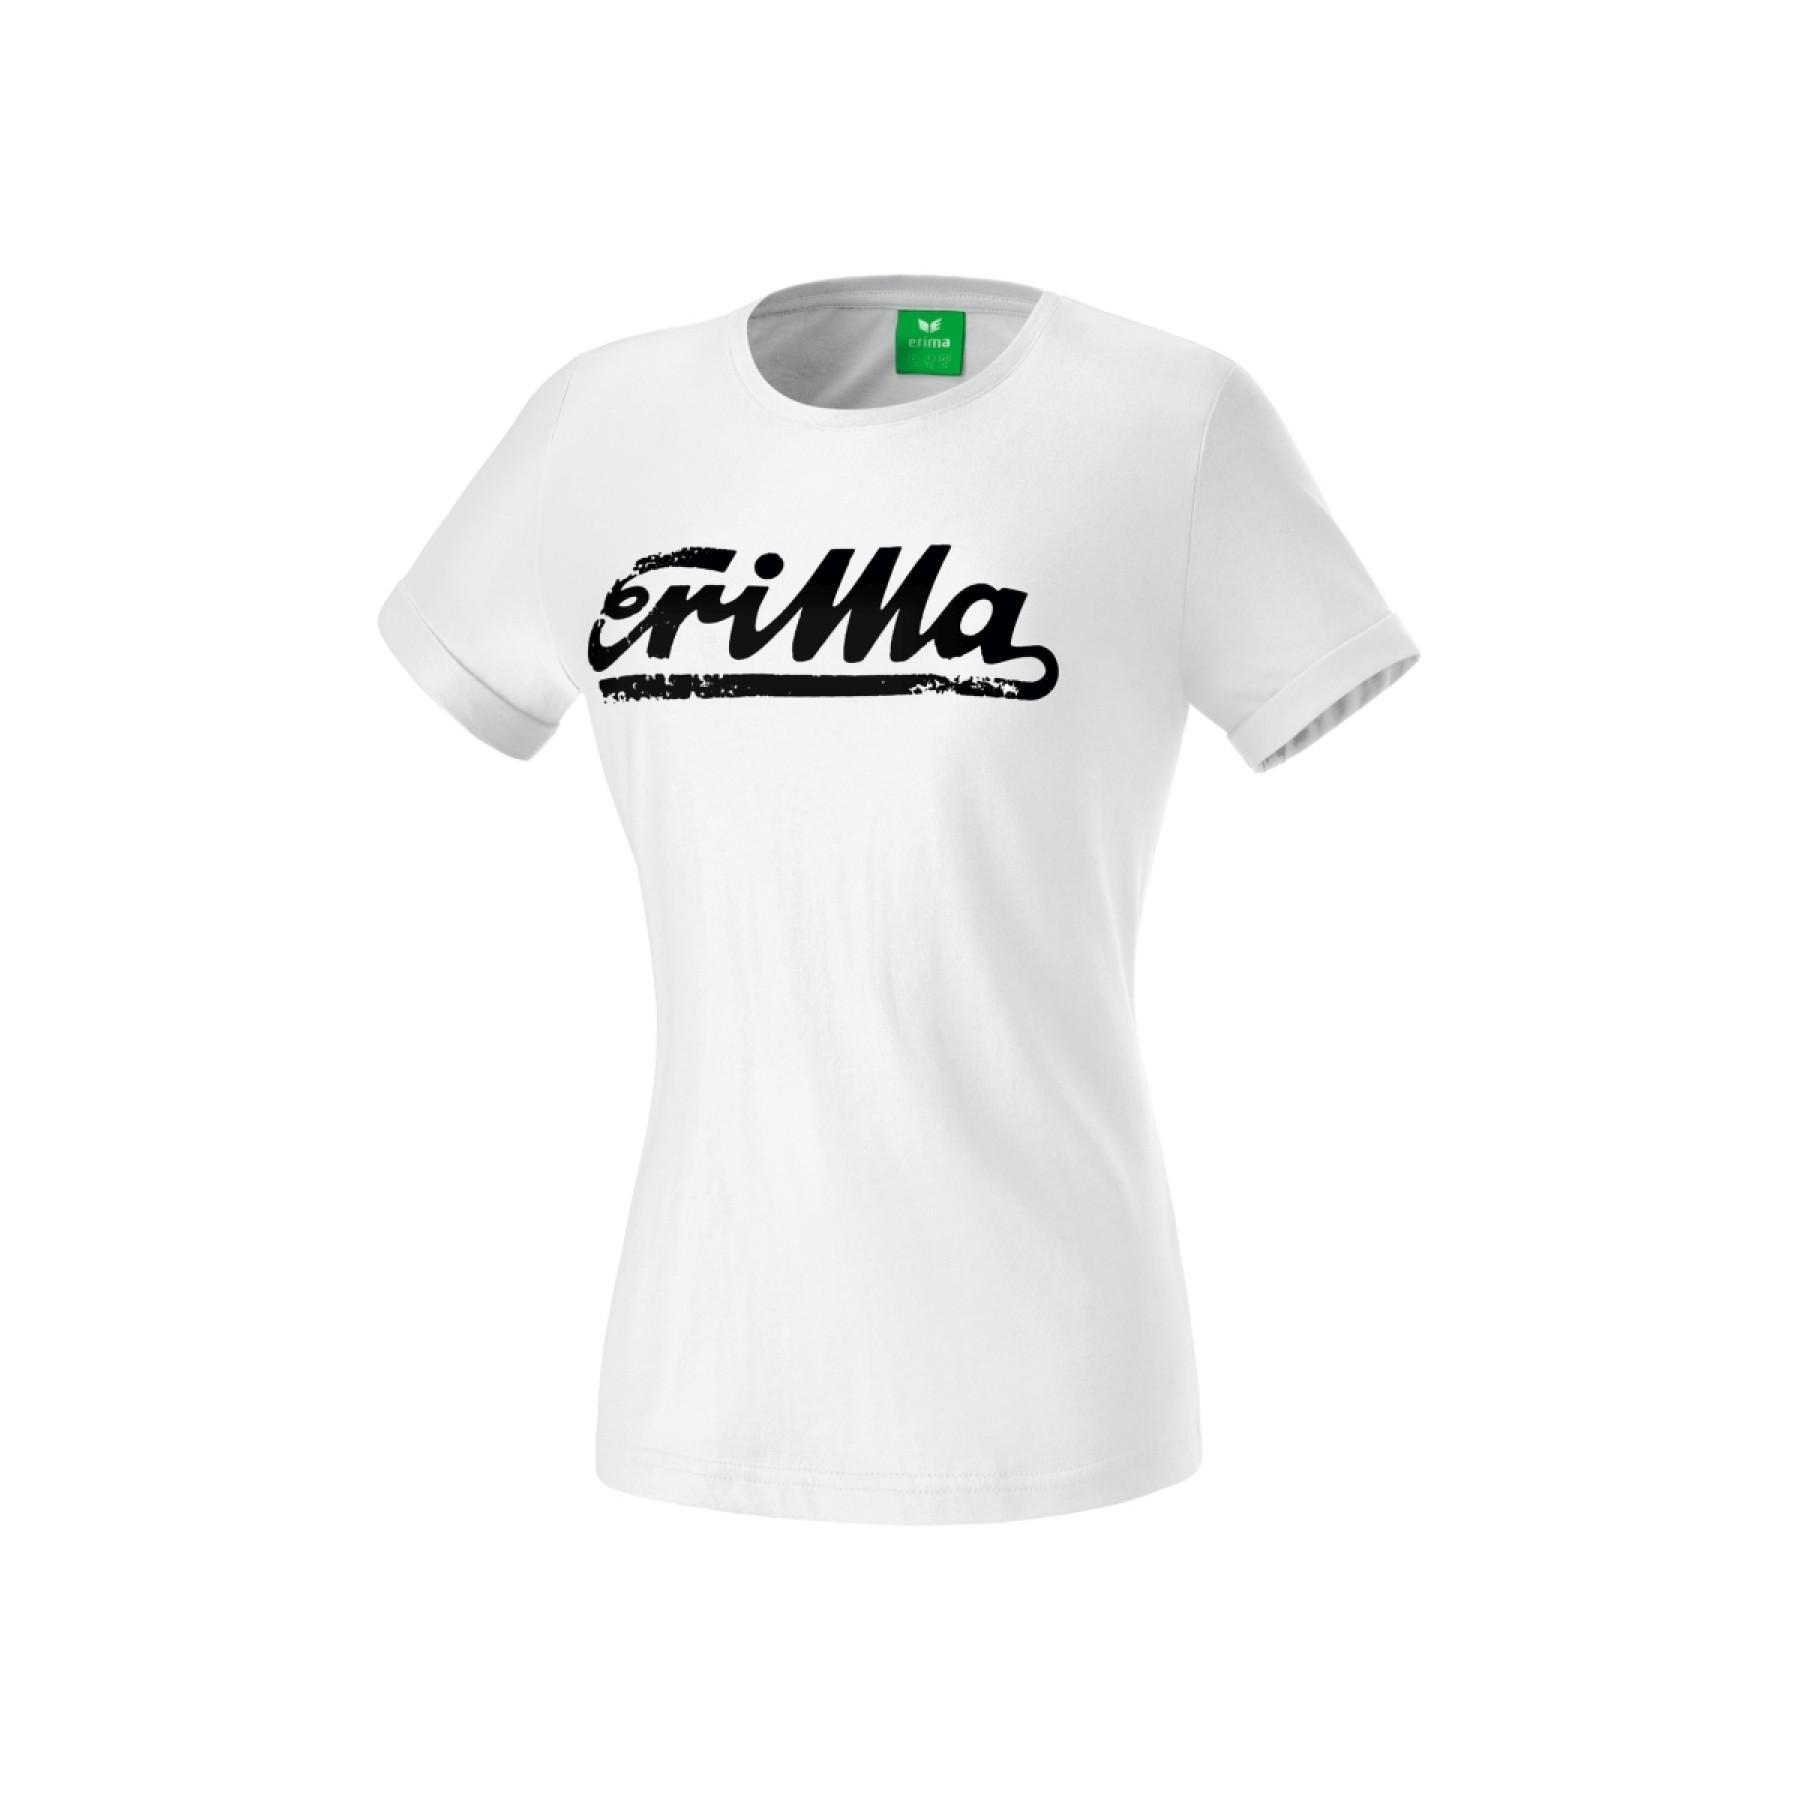 Camiseta de mujer Erima Retro Basics